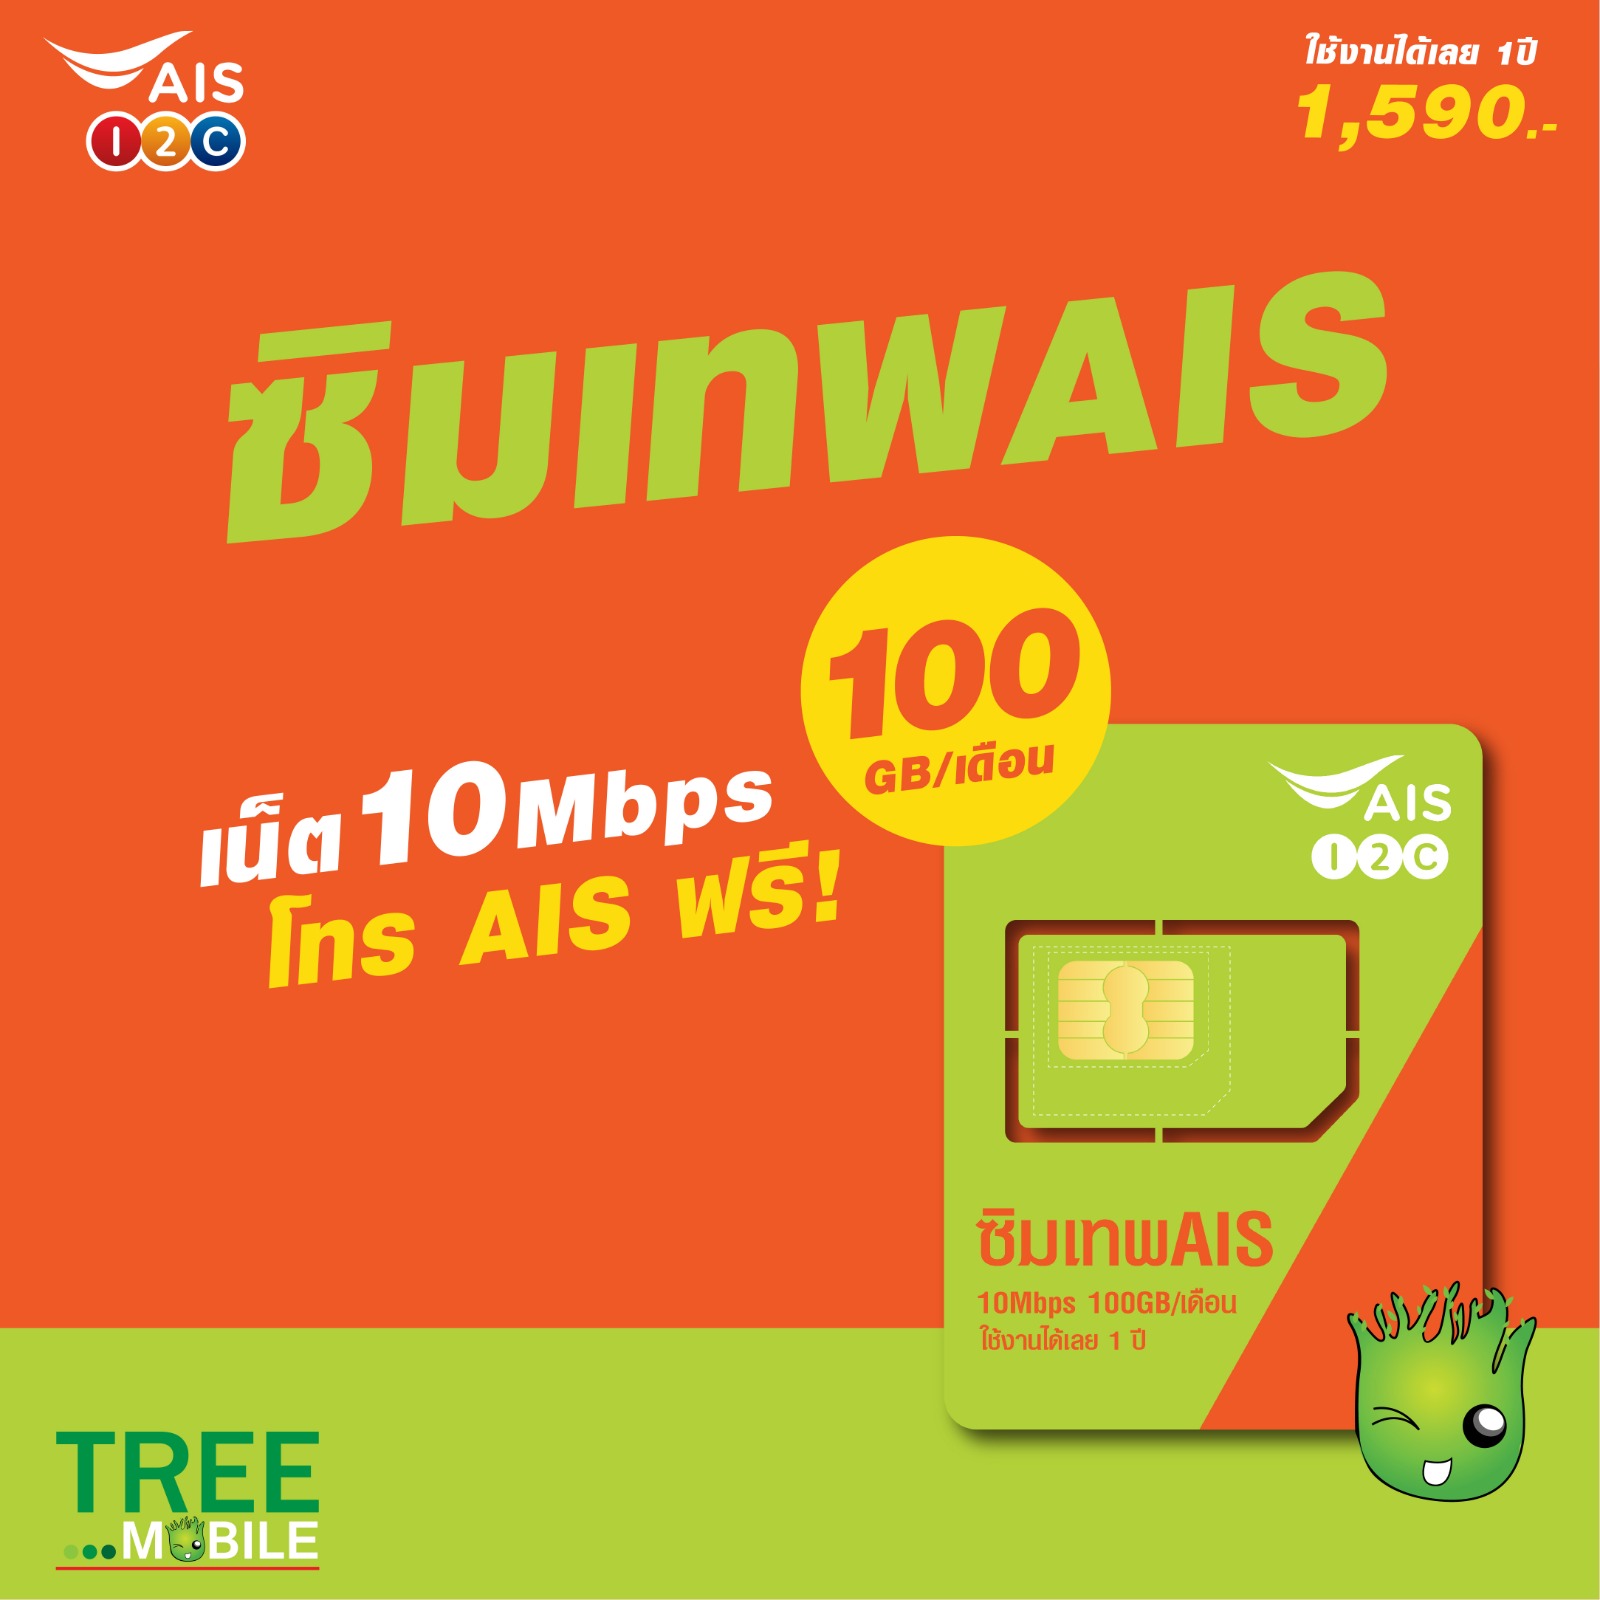 ซิมเทพ มาราธอน เน็ตรายปี เอไอเอส ซิมเทพ 10mbps 1ปี 100GB/เดือน โทรฟรี ในเครือข่าย AIS ส่งฟรี ซิม Ais 5G ของแท้ จ่ายครั้งเดียว TreeMobile TreeMobileMBK